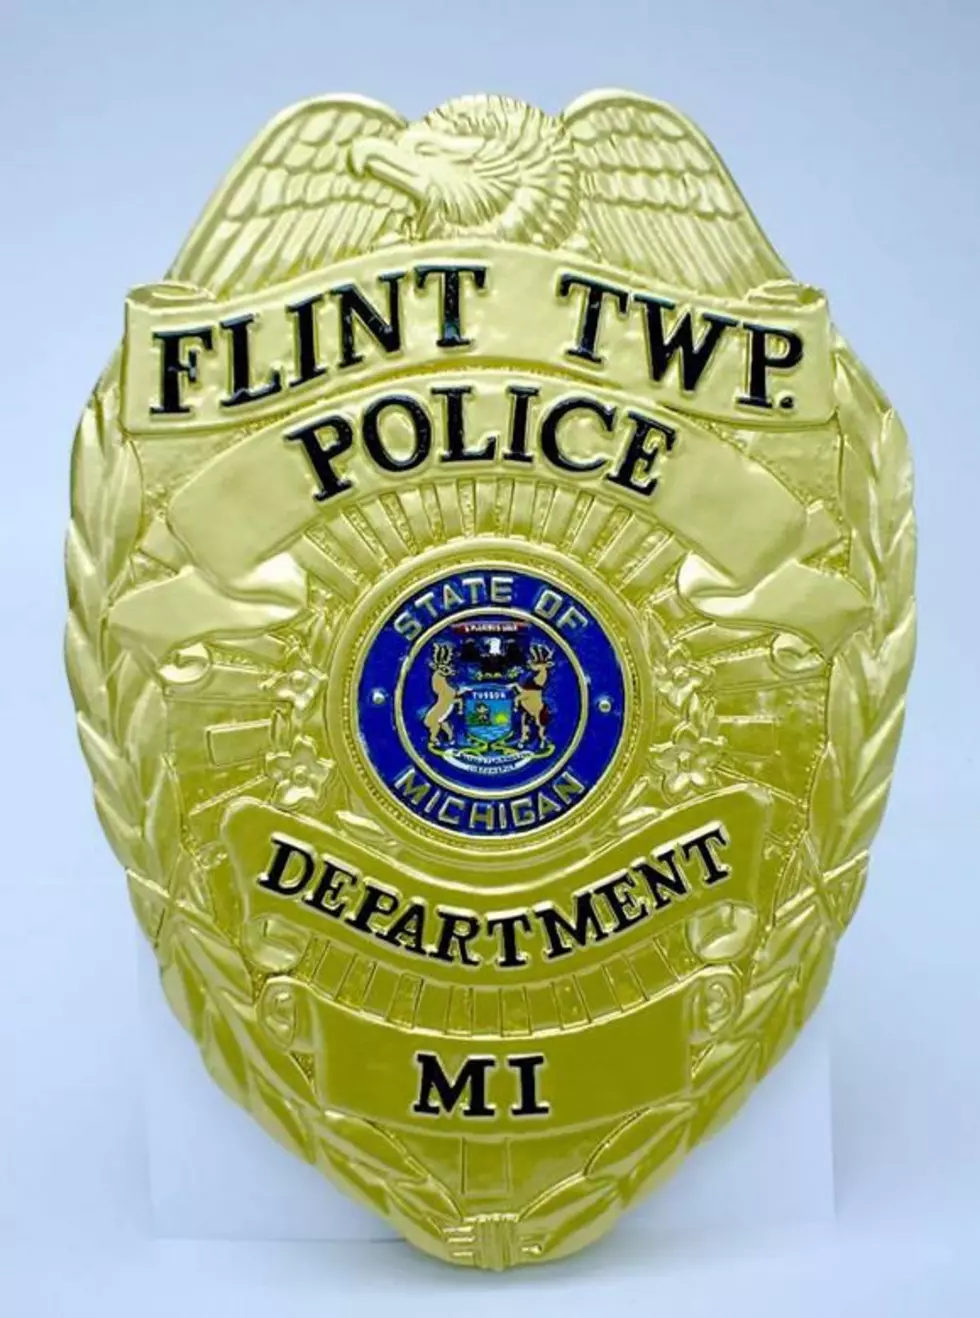 Wanna Be A Cop? Flint Township PD is Hiring [VIDEO]